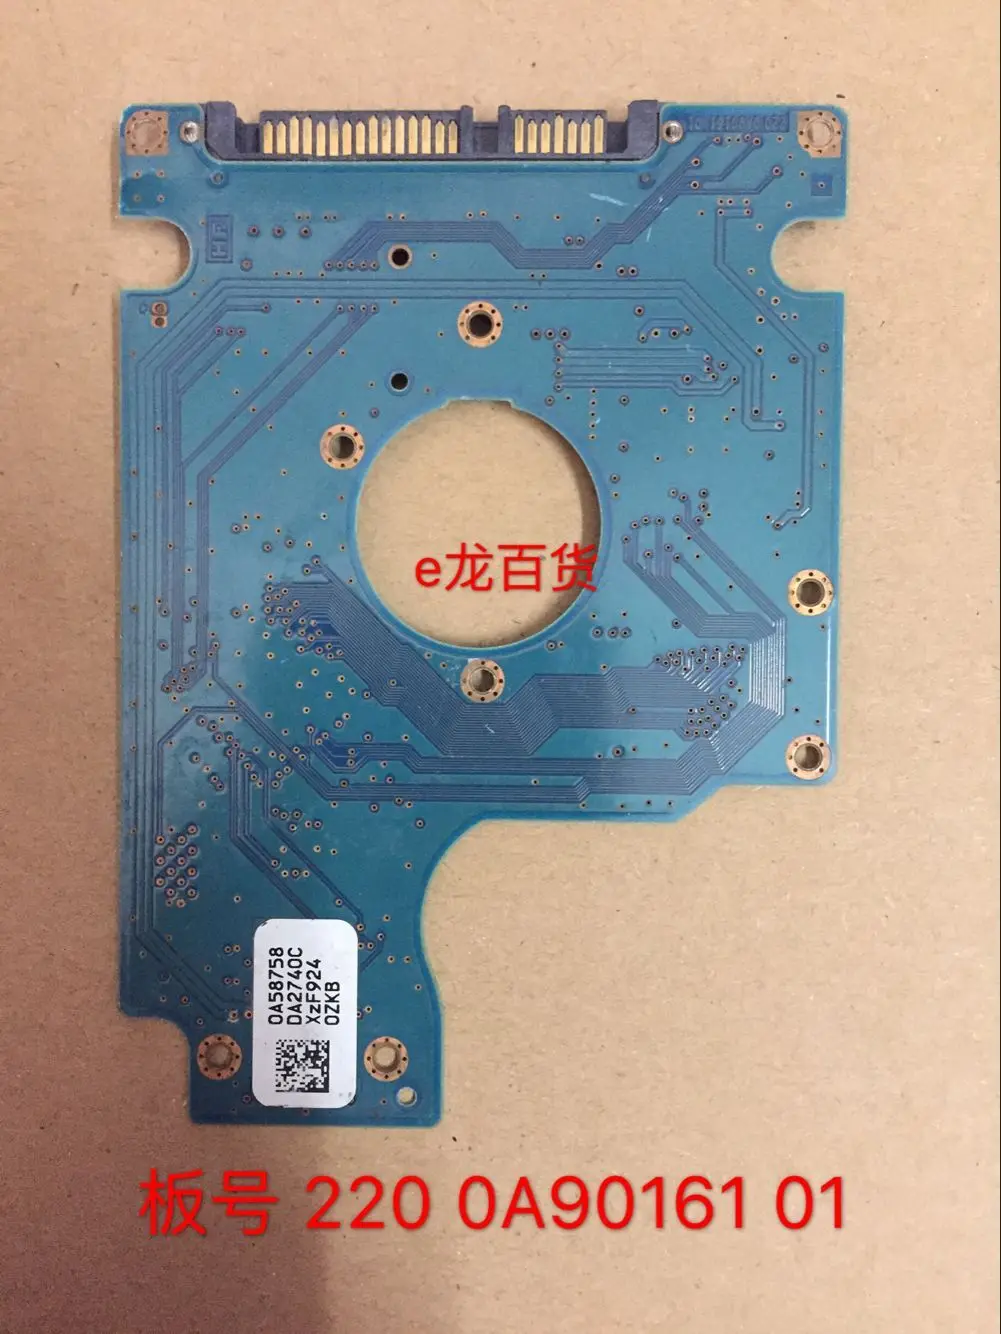 Kietojo disko dalys PCB lenta spausdintinių plokščių 220 0A90161 01 Hitachi 2.5 SATA hdd duomenų atkūrimo kietajame diske remonto